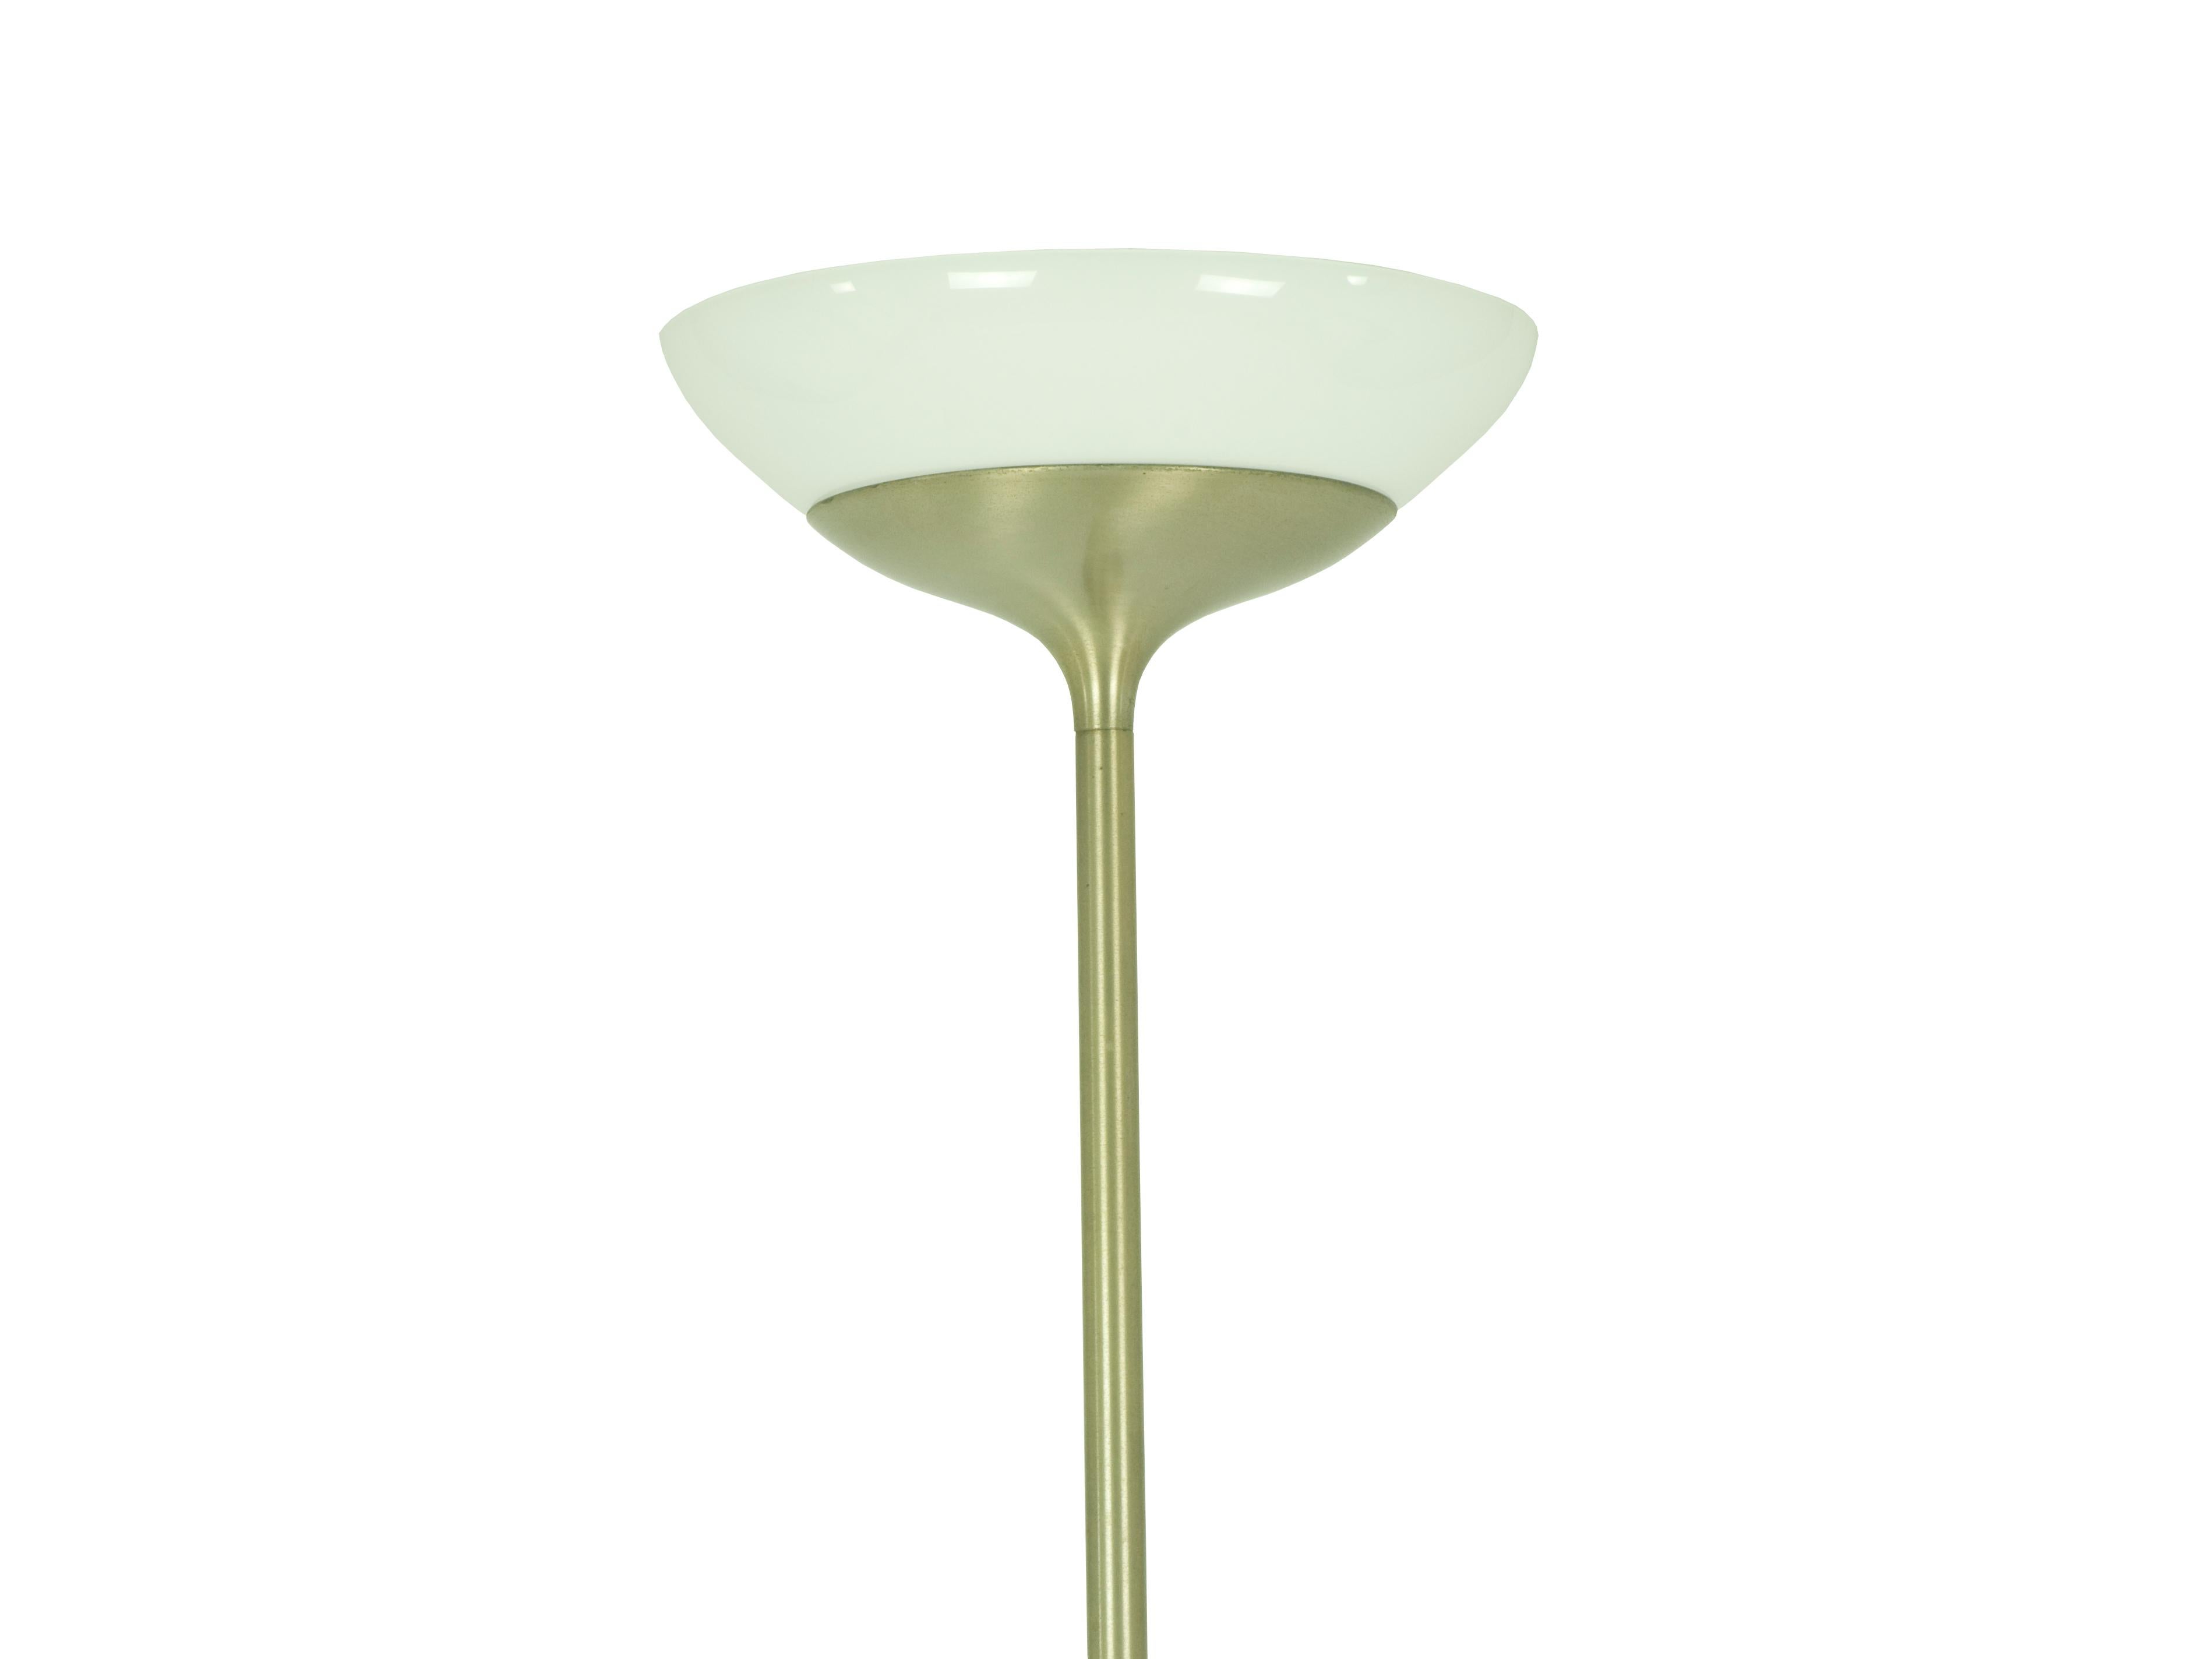 Un lampadaire Aminta iconique conçu par Emma Gismondi Schweinberger pour Artemide. La lampe est fabriquée en laiton nickelé et l'abat-jour en verre opalin. Il reste dans un très bon état vintage : Patine et usure conformes à l'âge et à l'usage. Il